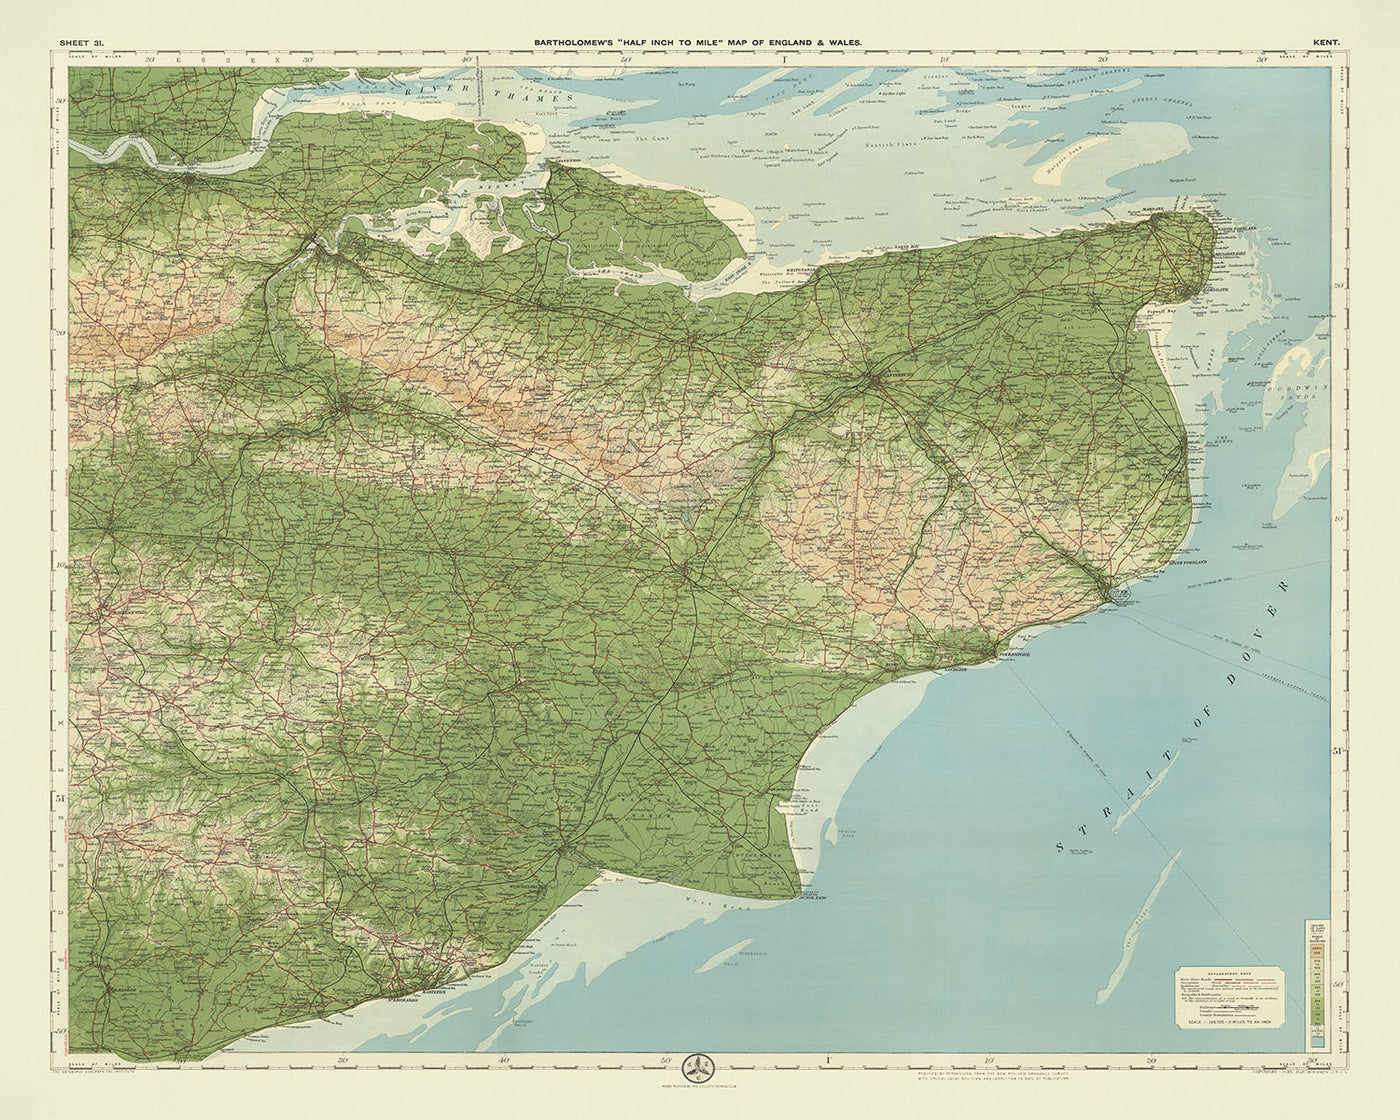 Alte OS-Karte von Kent, England von Bartholomew, 1901: Themsemündung, Dover, Canterbury, North Downs, Weald, Isle of Sheppey